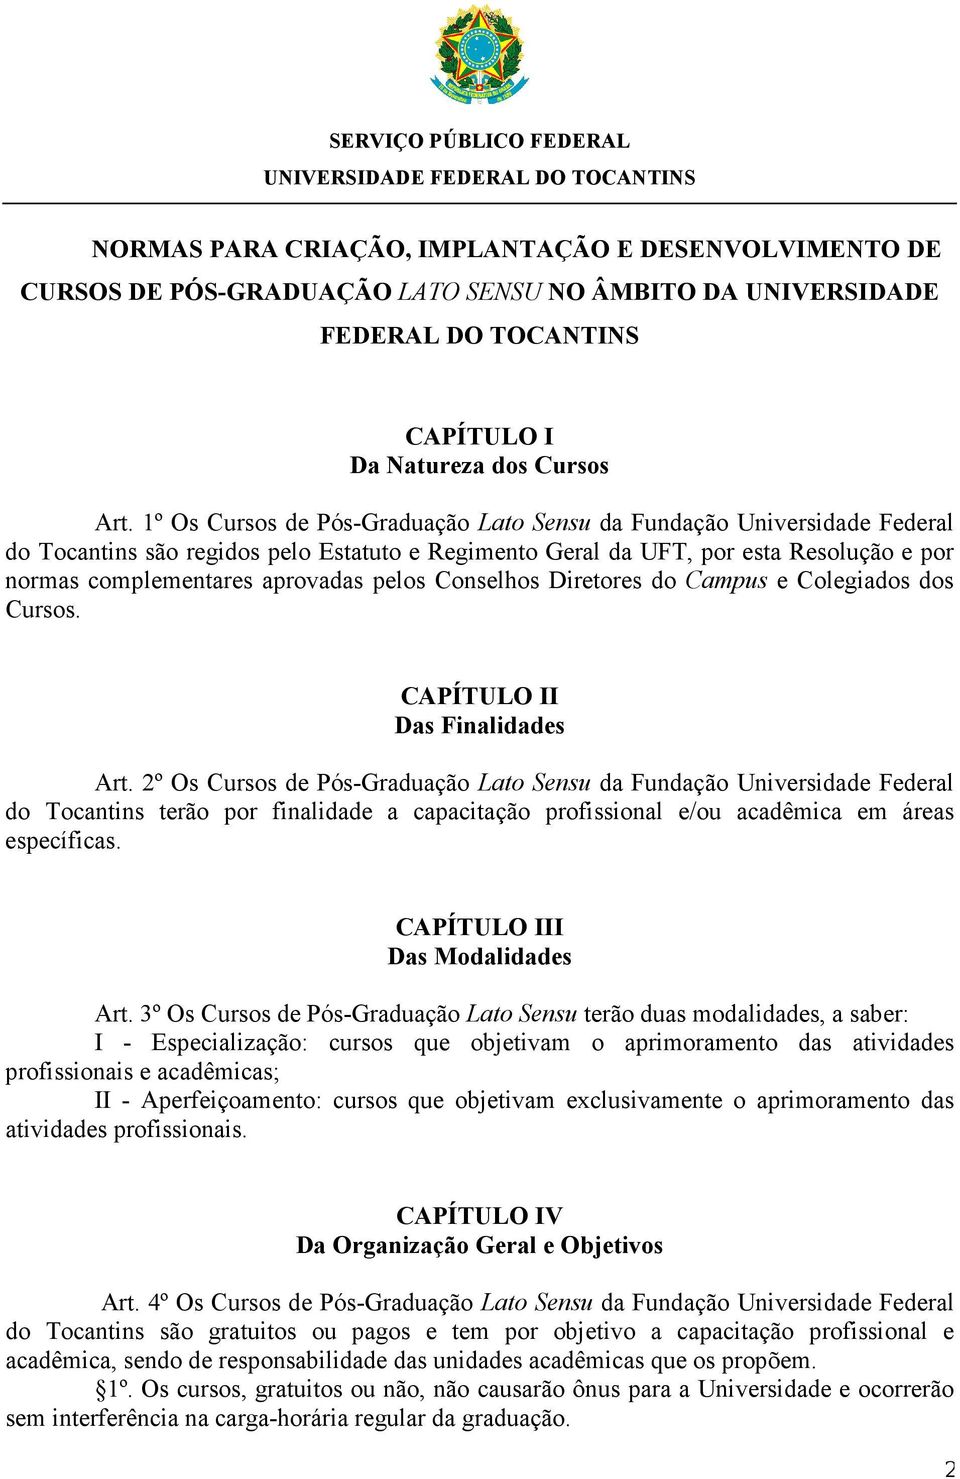 1º Os Cursos de Pós-Graduação Lato Sensu da Fundação Universidade Federal do Tocantins são regidos pelo Estatuto e Regimento Geral da UFT, por esta Resolução e por normas complementares aprovadas